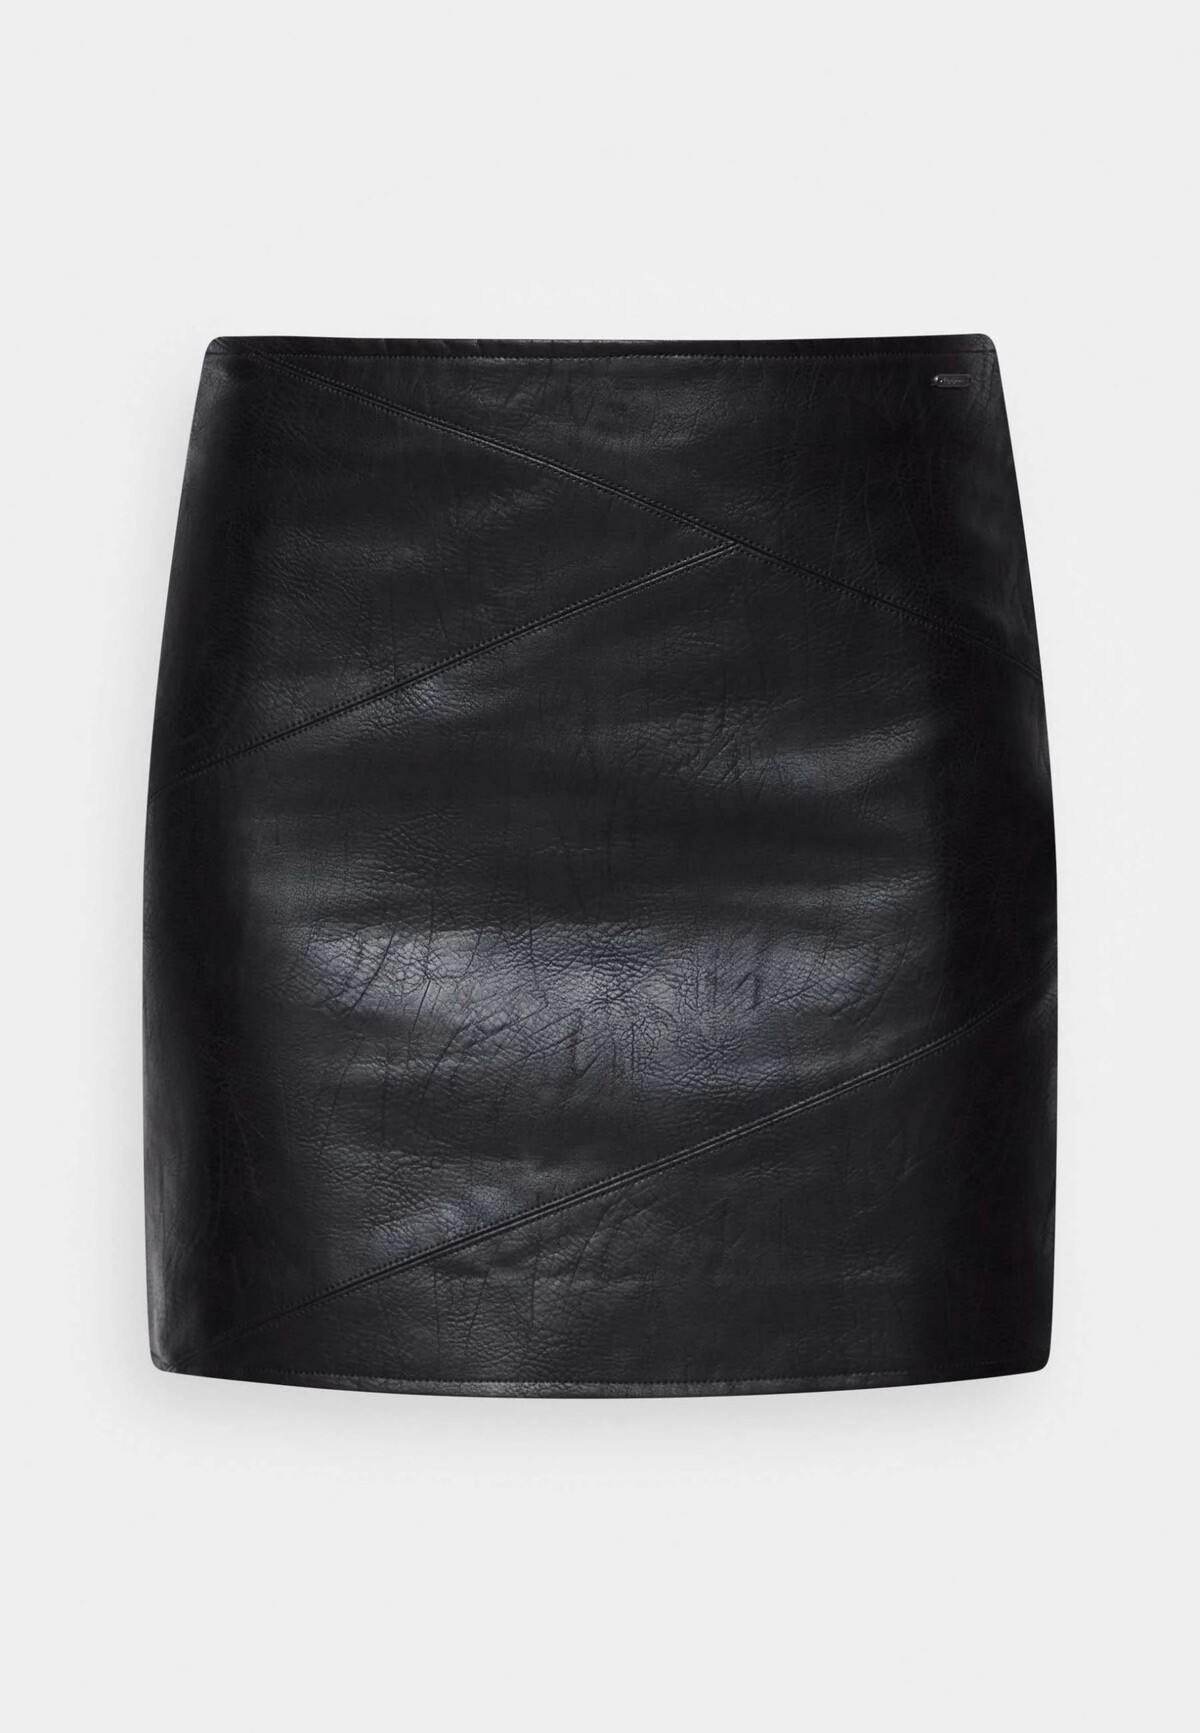 Lacnejšou, no o nič menej zaujímavou variáciou koženej sukne je aj model značky Pepe Jeans. Túto čiernu minisukňu kúpiš za 75,90 €.